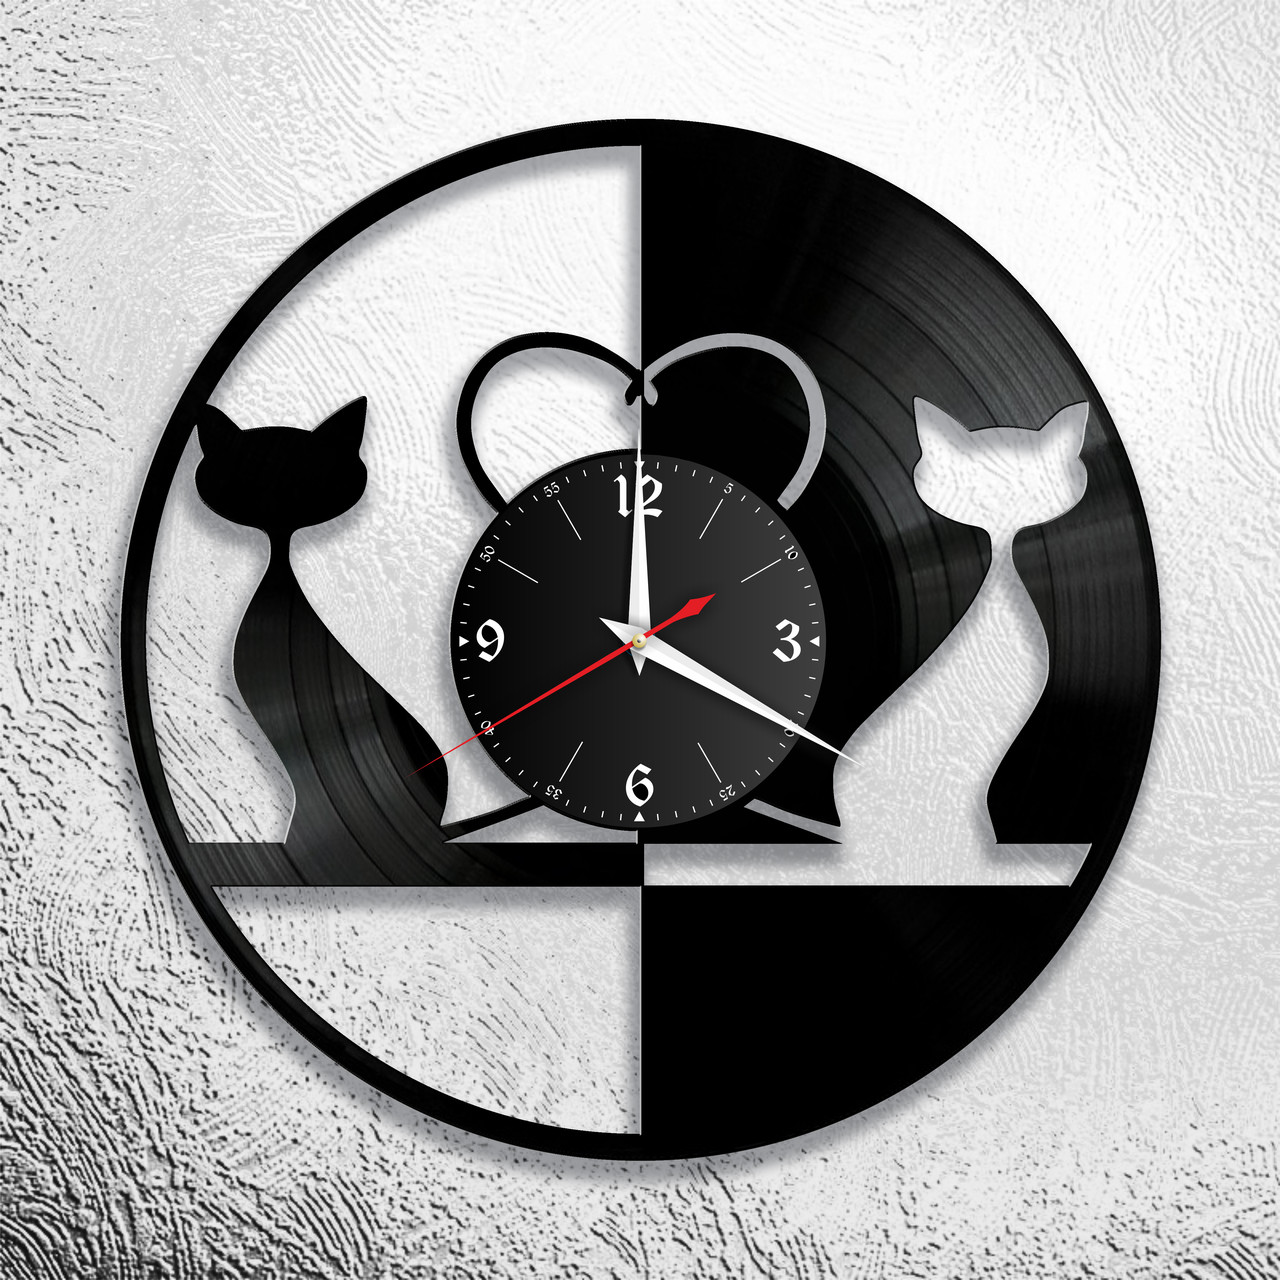 Оригинальные часы из виниловых пластинок "Коты" версия 2